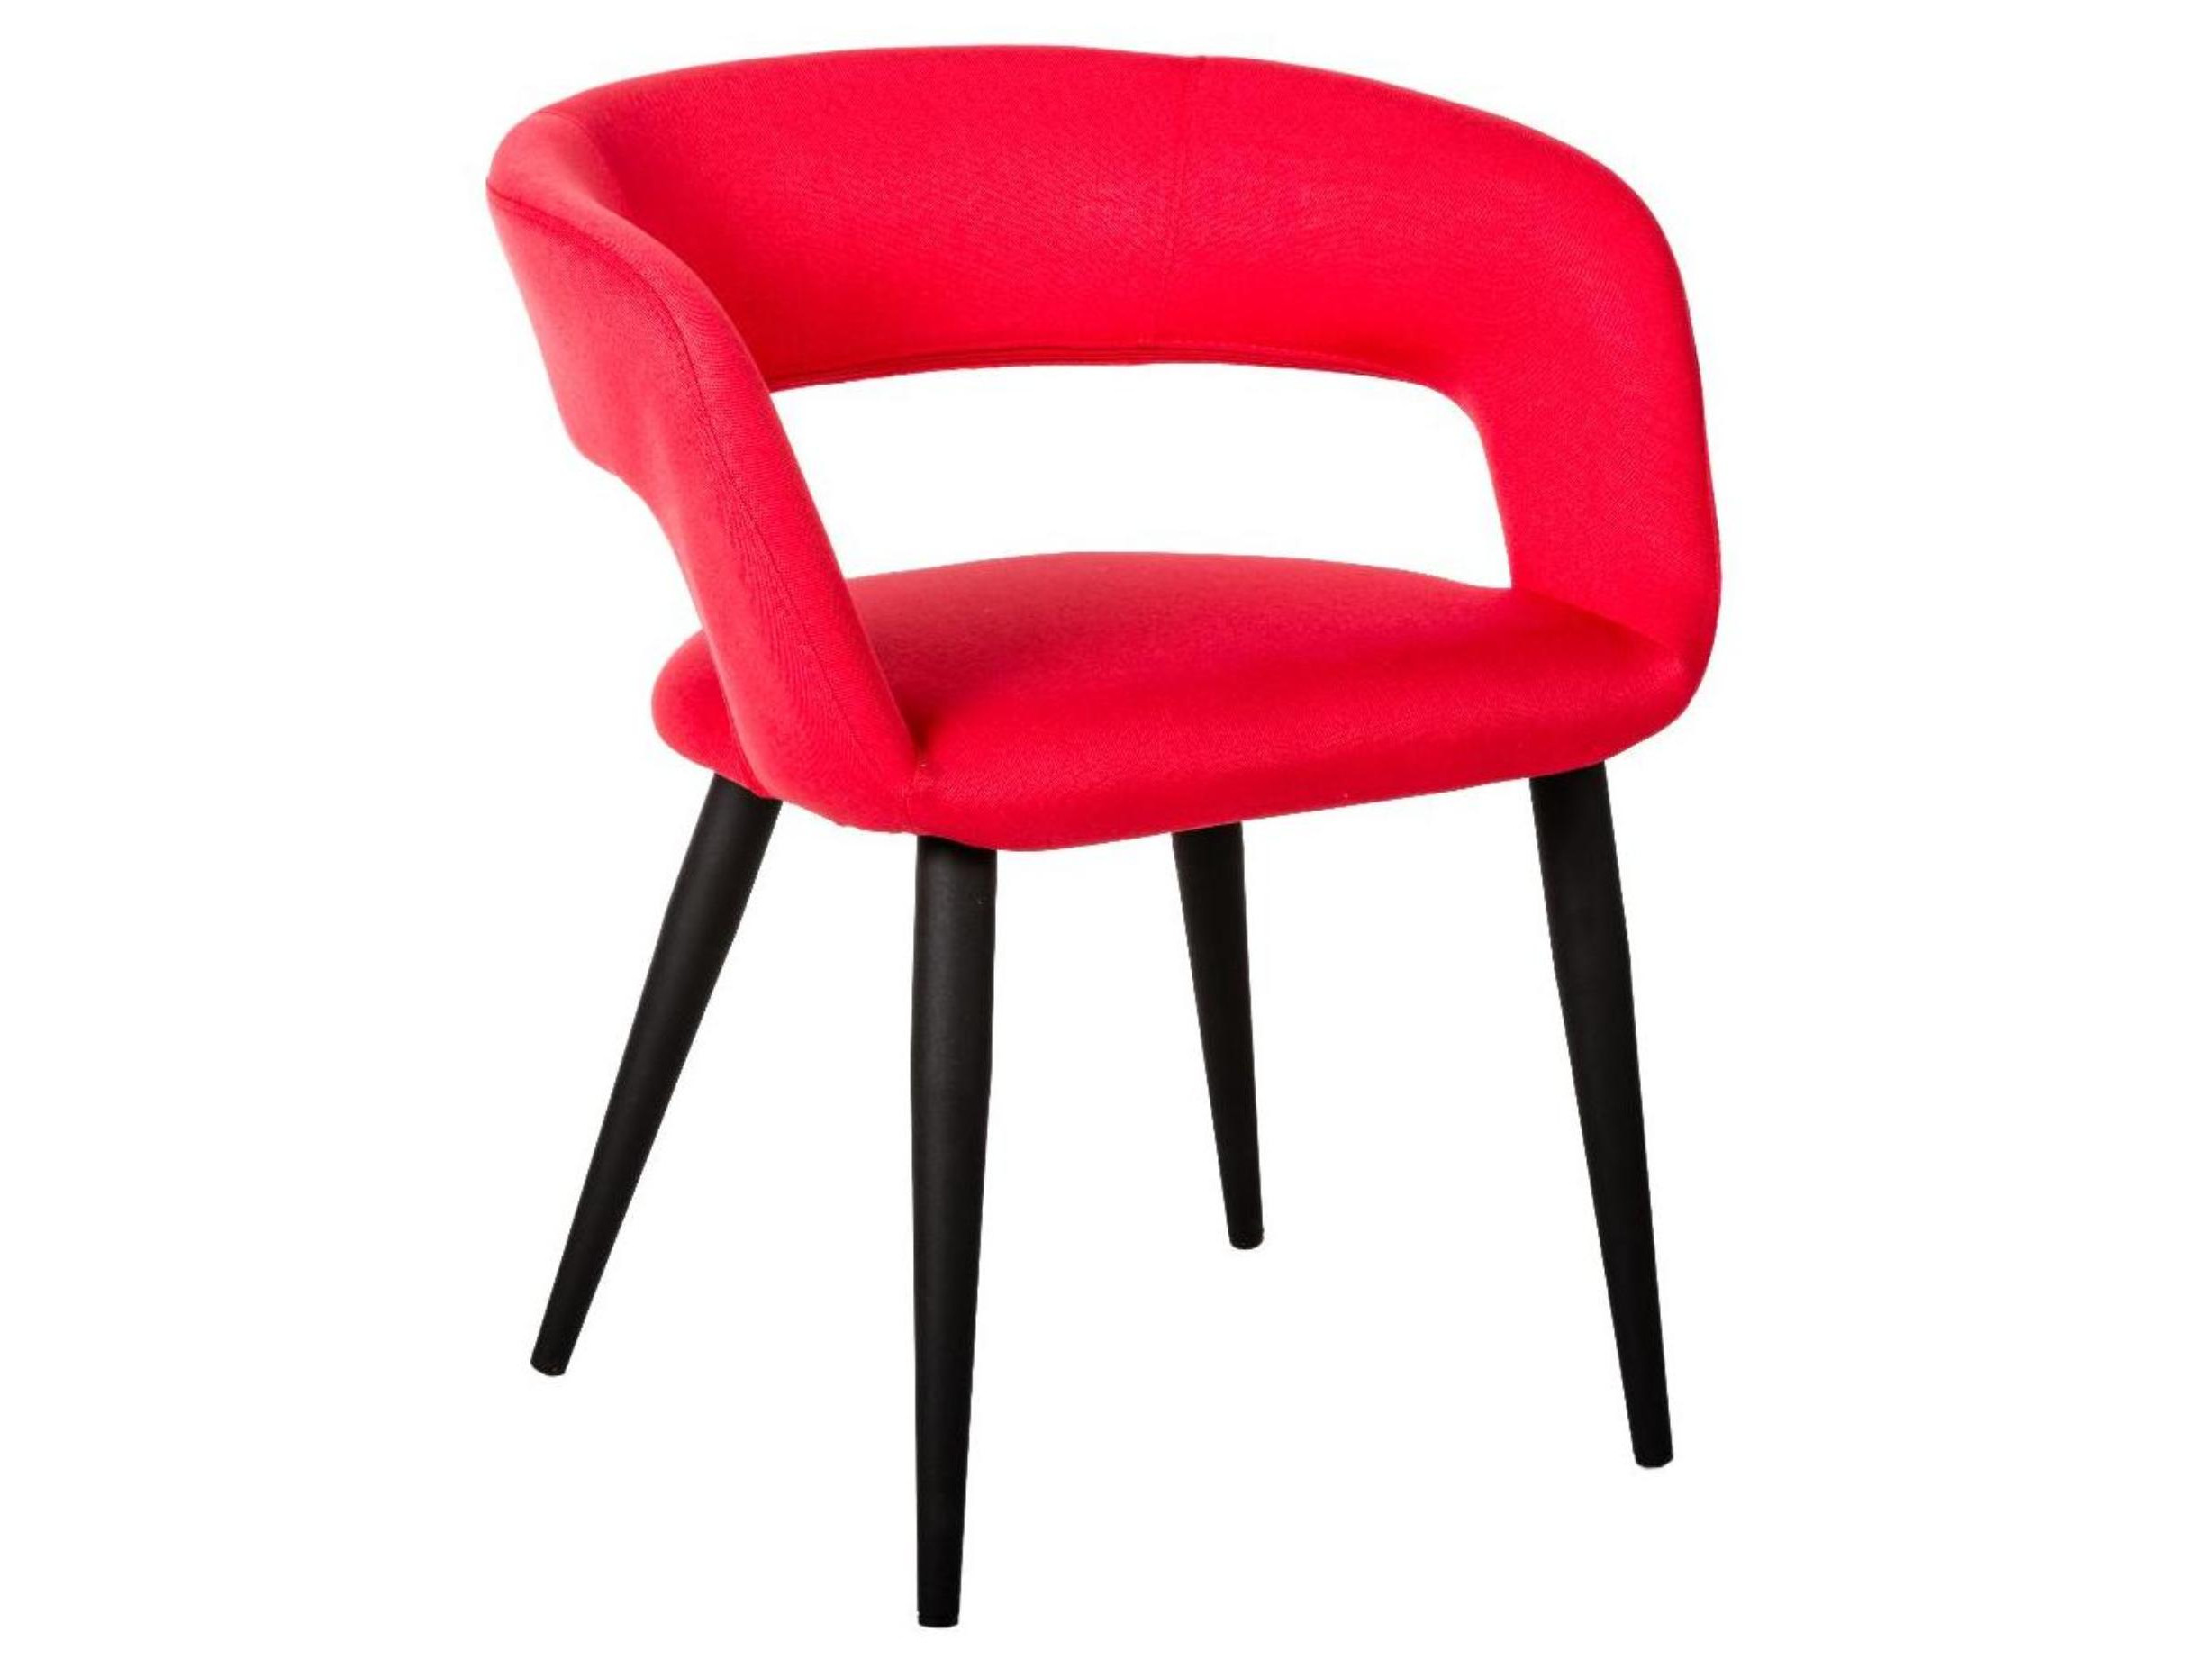 стул для посетителей рс00м черный каркас ткань черная Стул Hugs Красн/Черный Красный, Металл